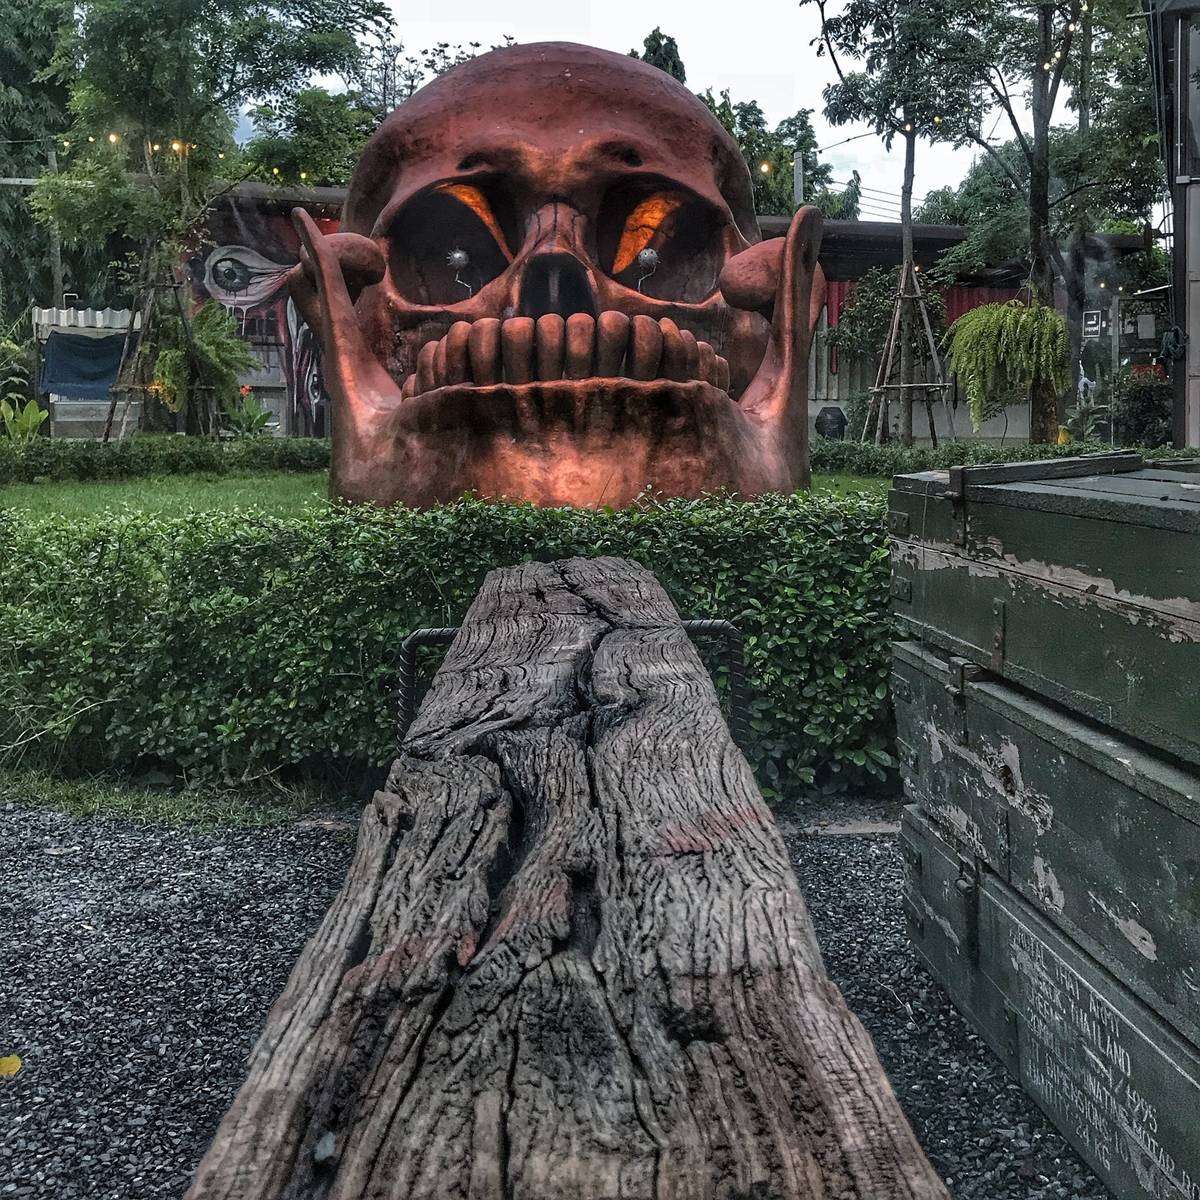 This skull sculpture was huge!